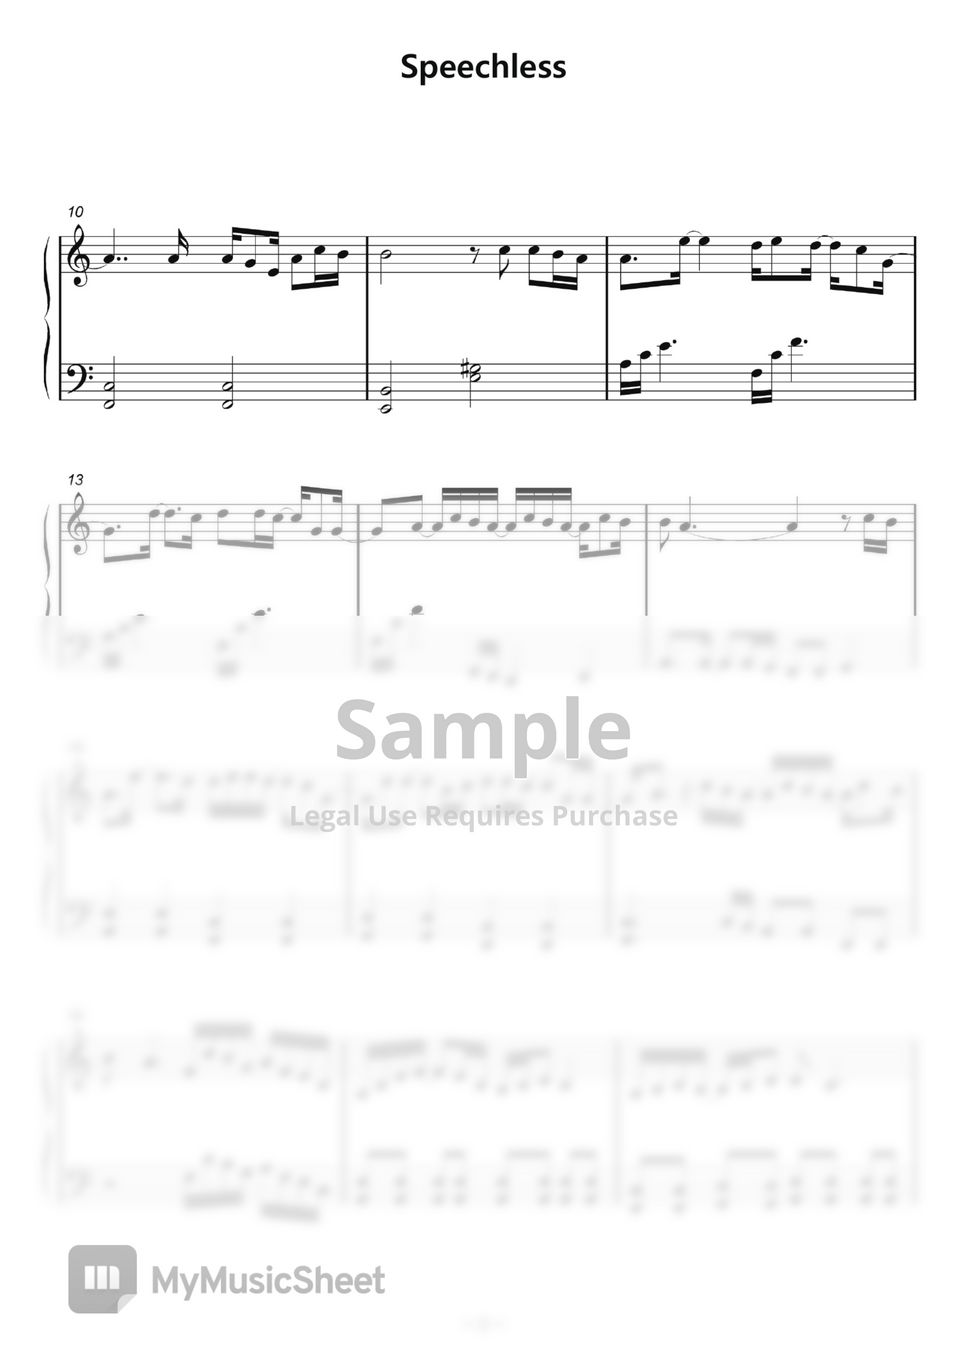 알라딘OST - Speechless 쉬운버전(Easy) Piano cover by samsunny